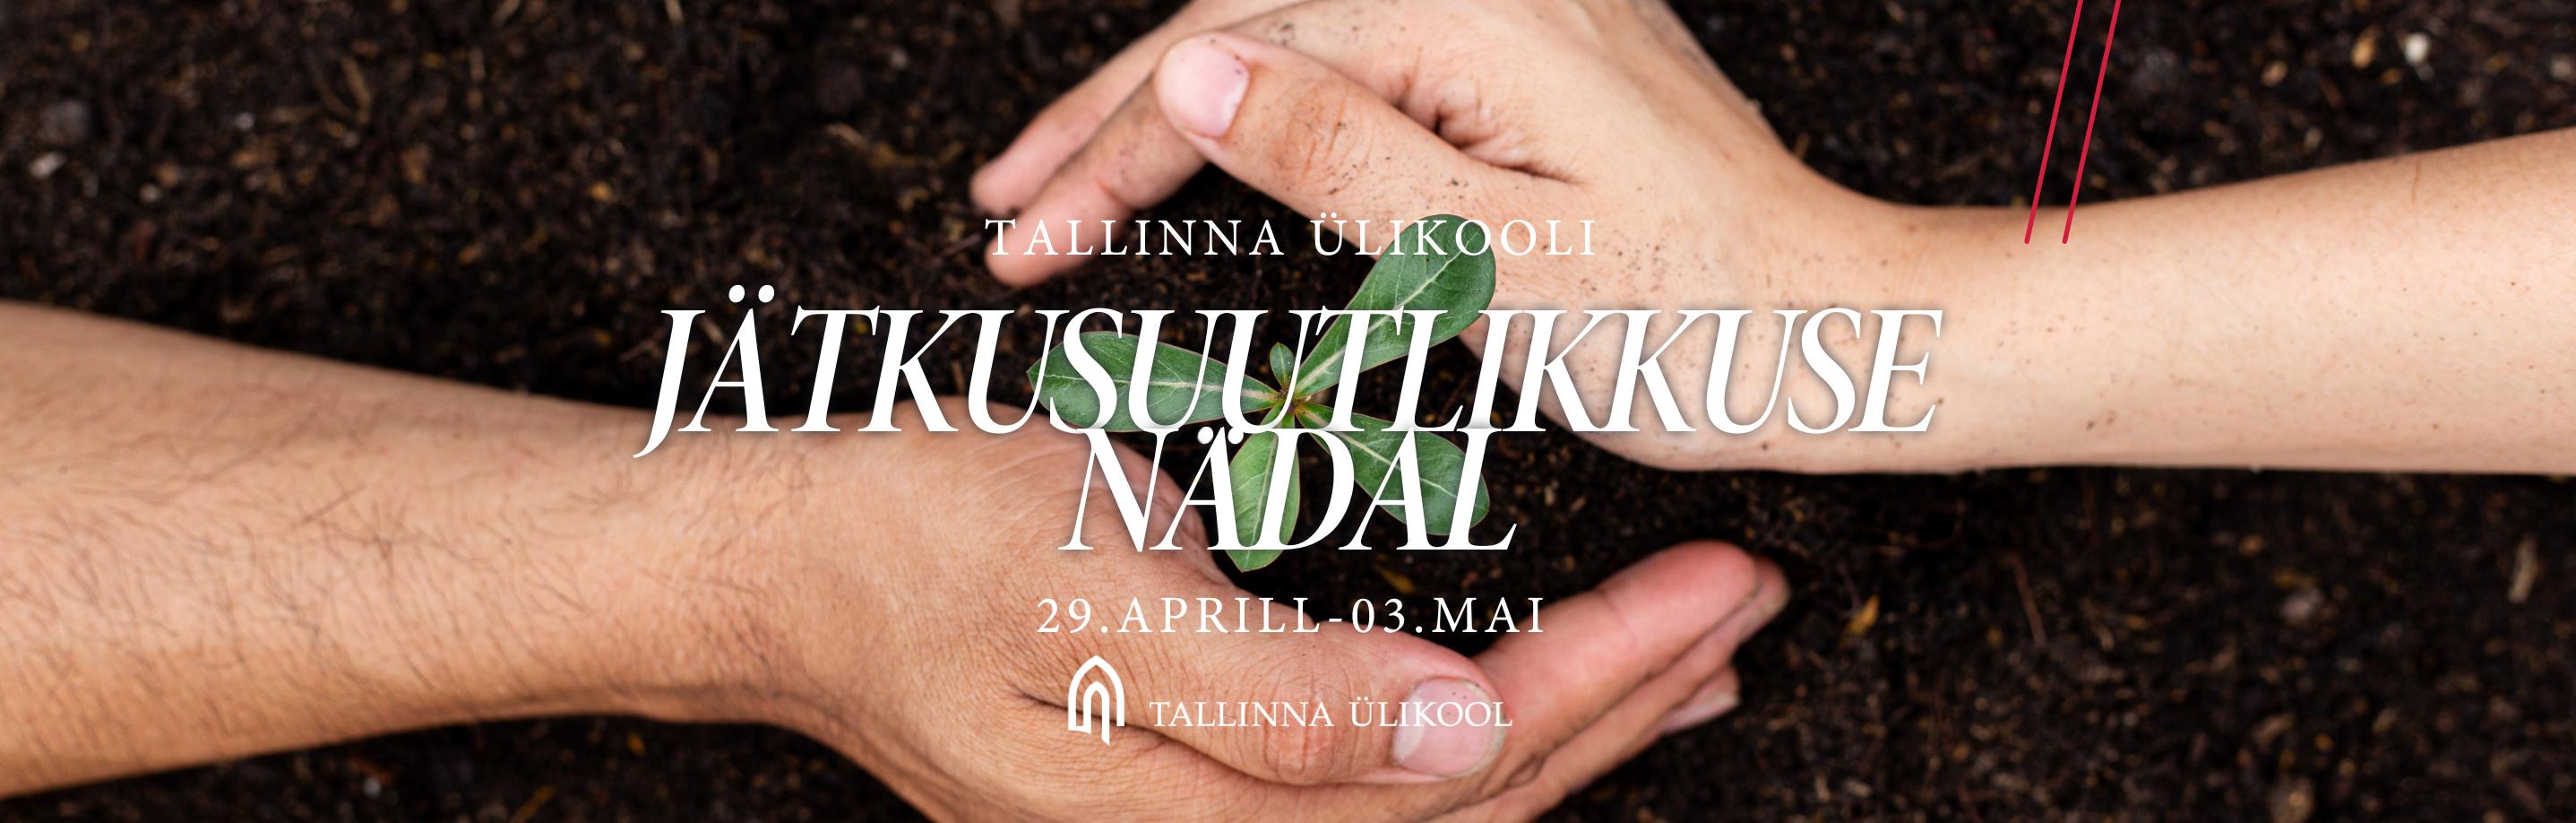 Jätkusuutlikuse nädal - eesti